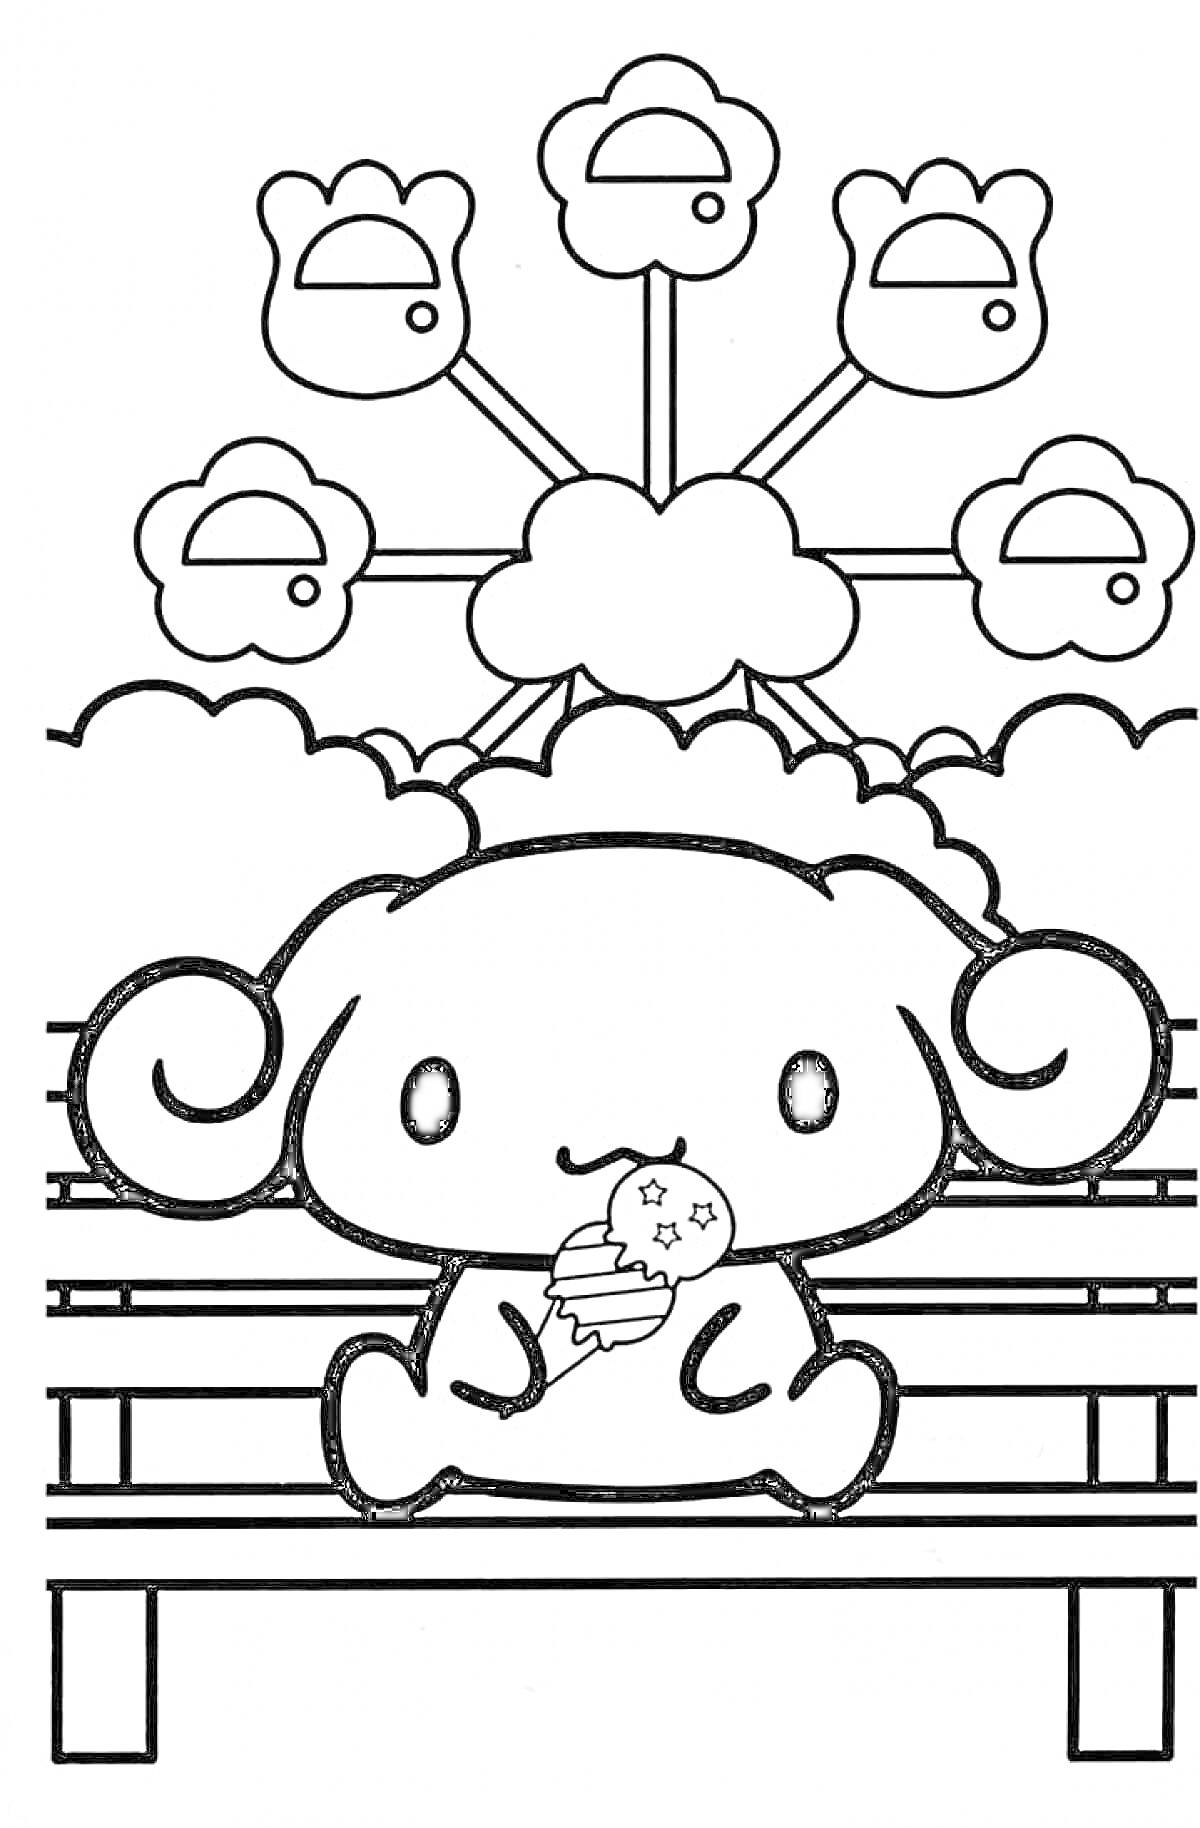 Май Мелоди на скамейке с мороженым на фоне облаков и яблок